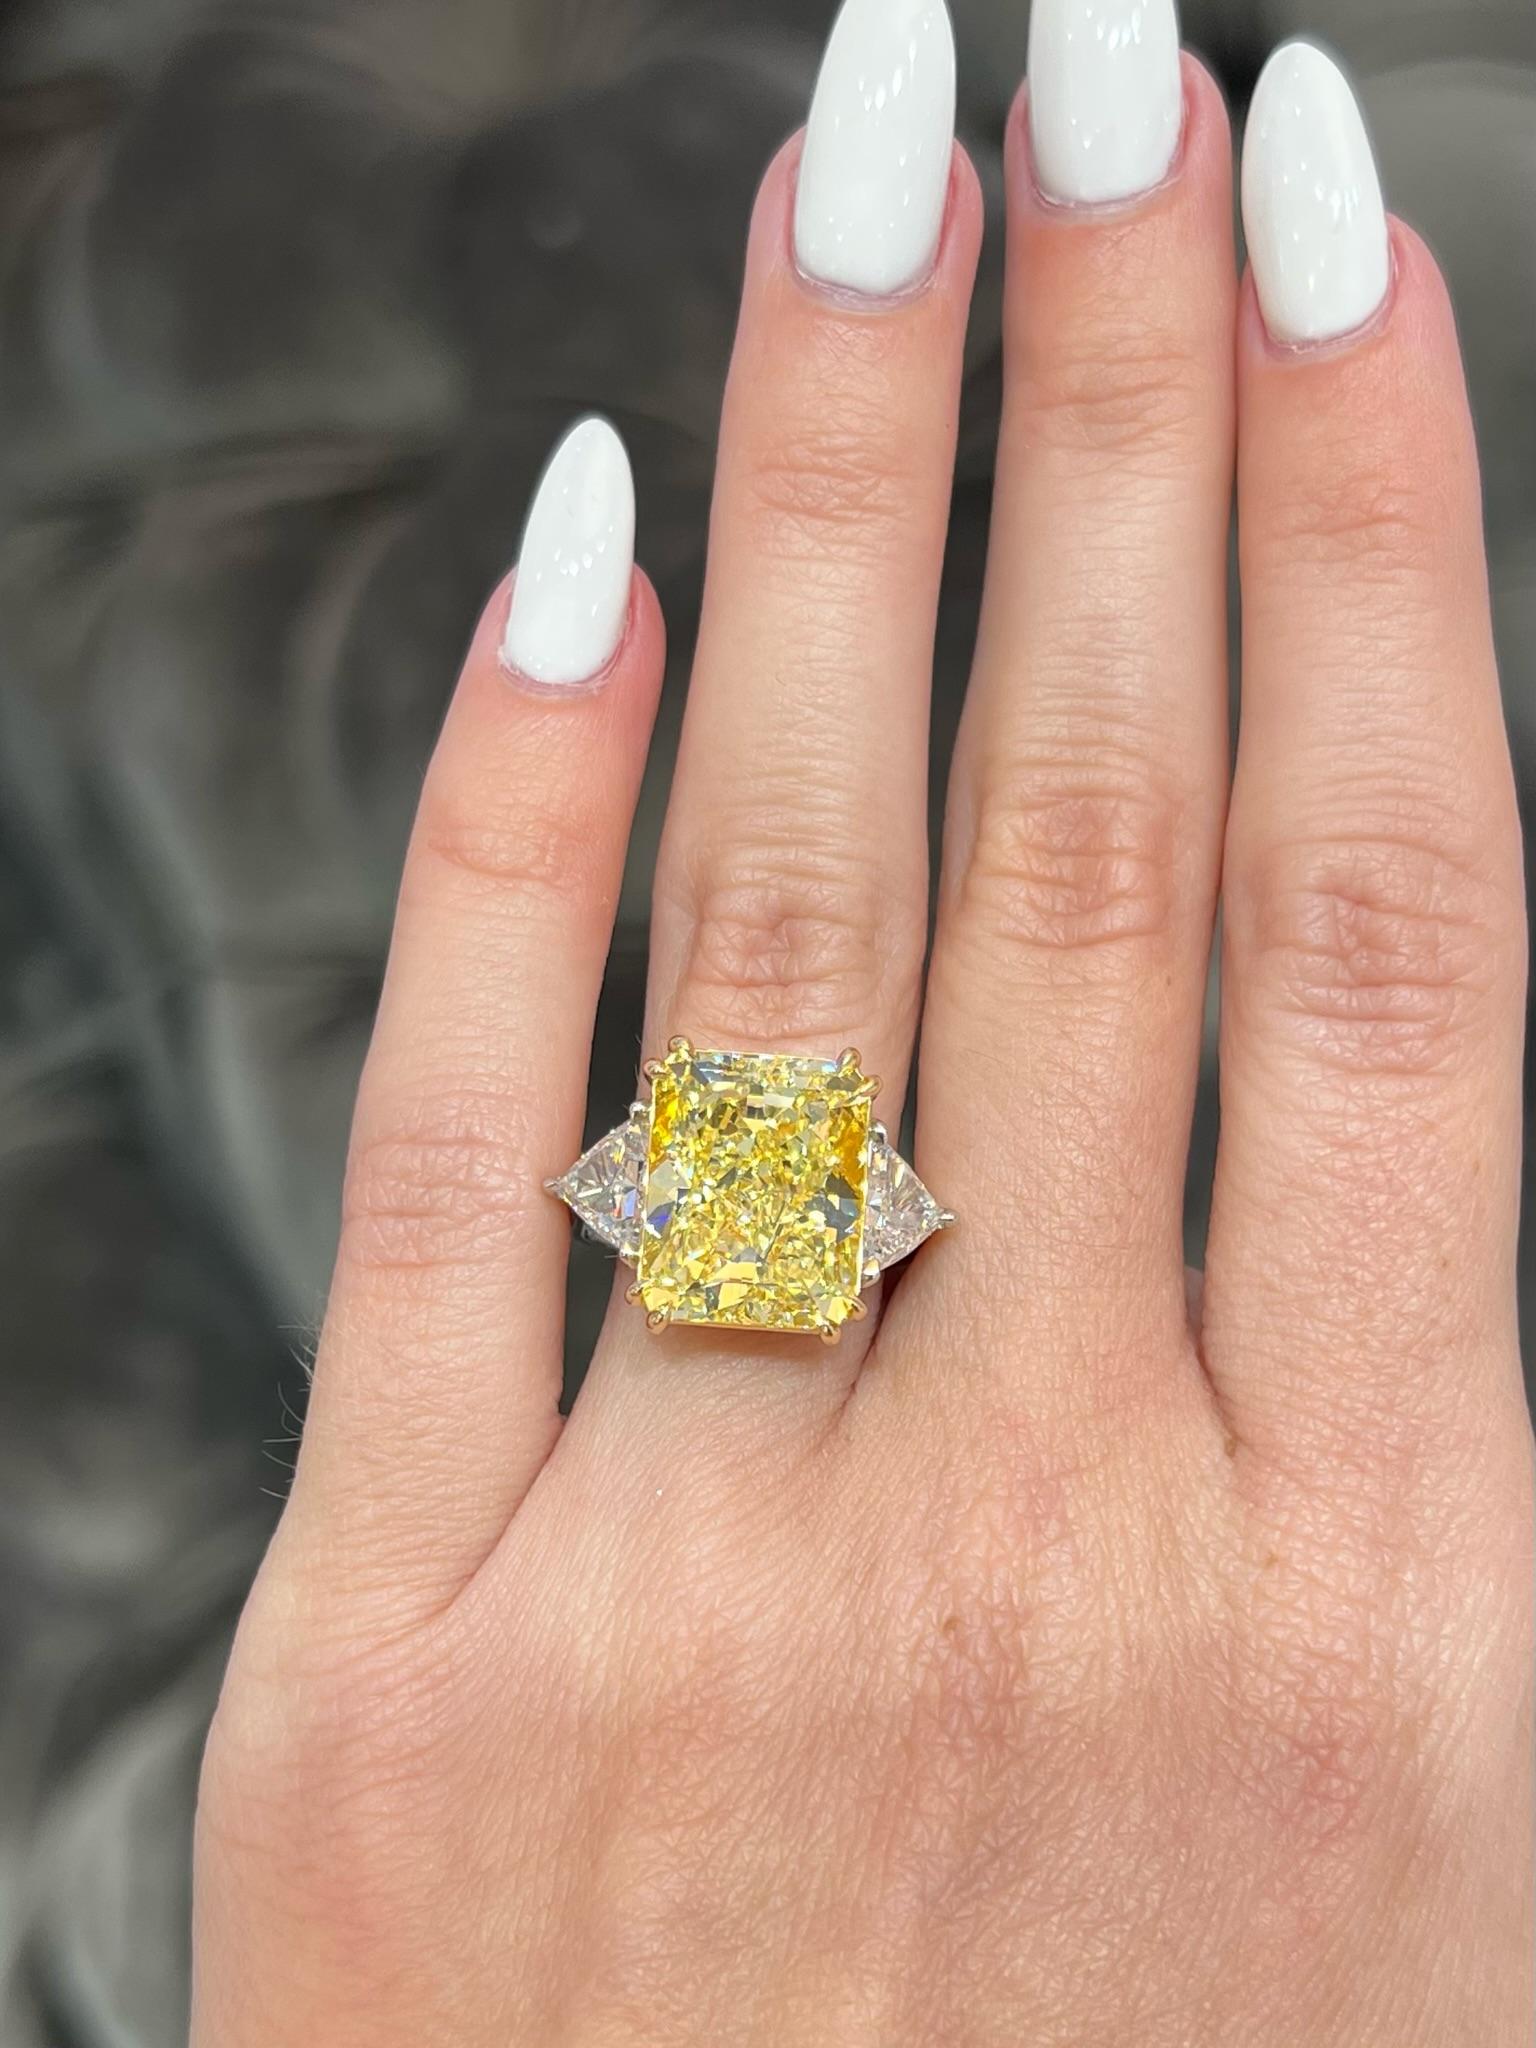 David Rosenberg 10.41 Radiant Fancy Yellow VS1 GIA Diamond Engagement Ring For Sale 1